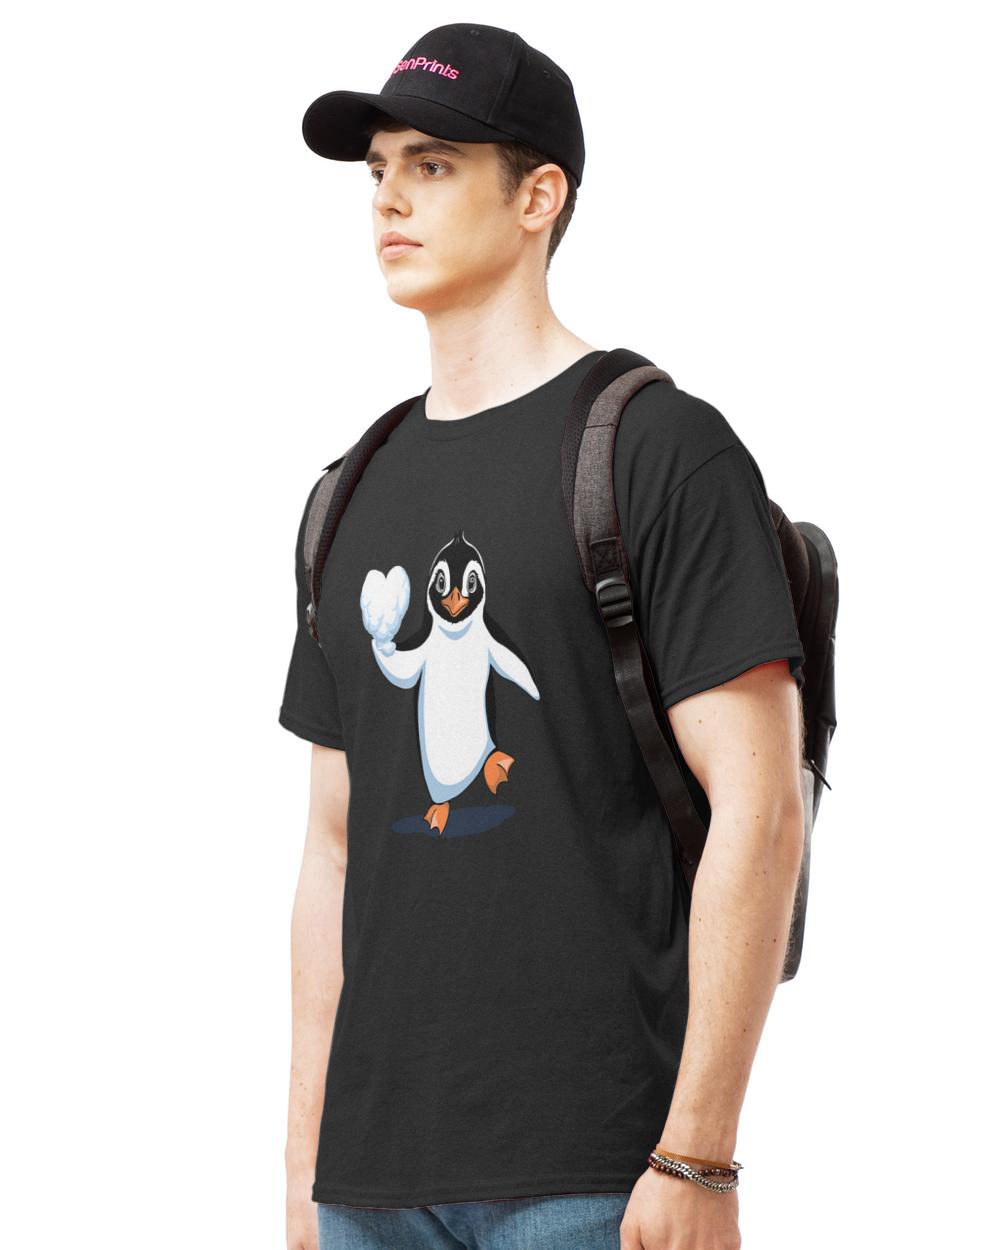 Penguin Lover T-ShirtPenguin Love Graphic Design T-Shirt